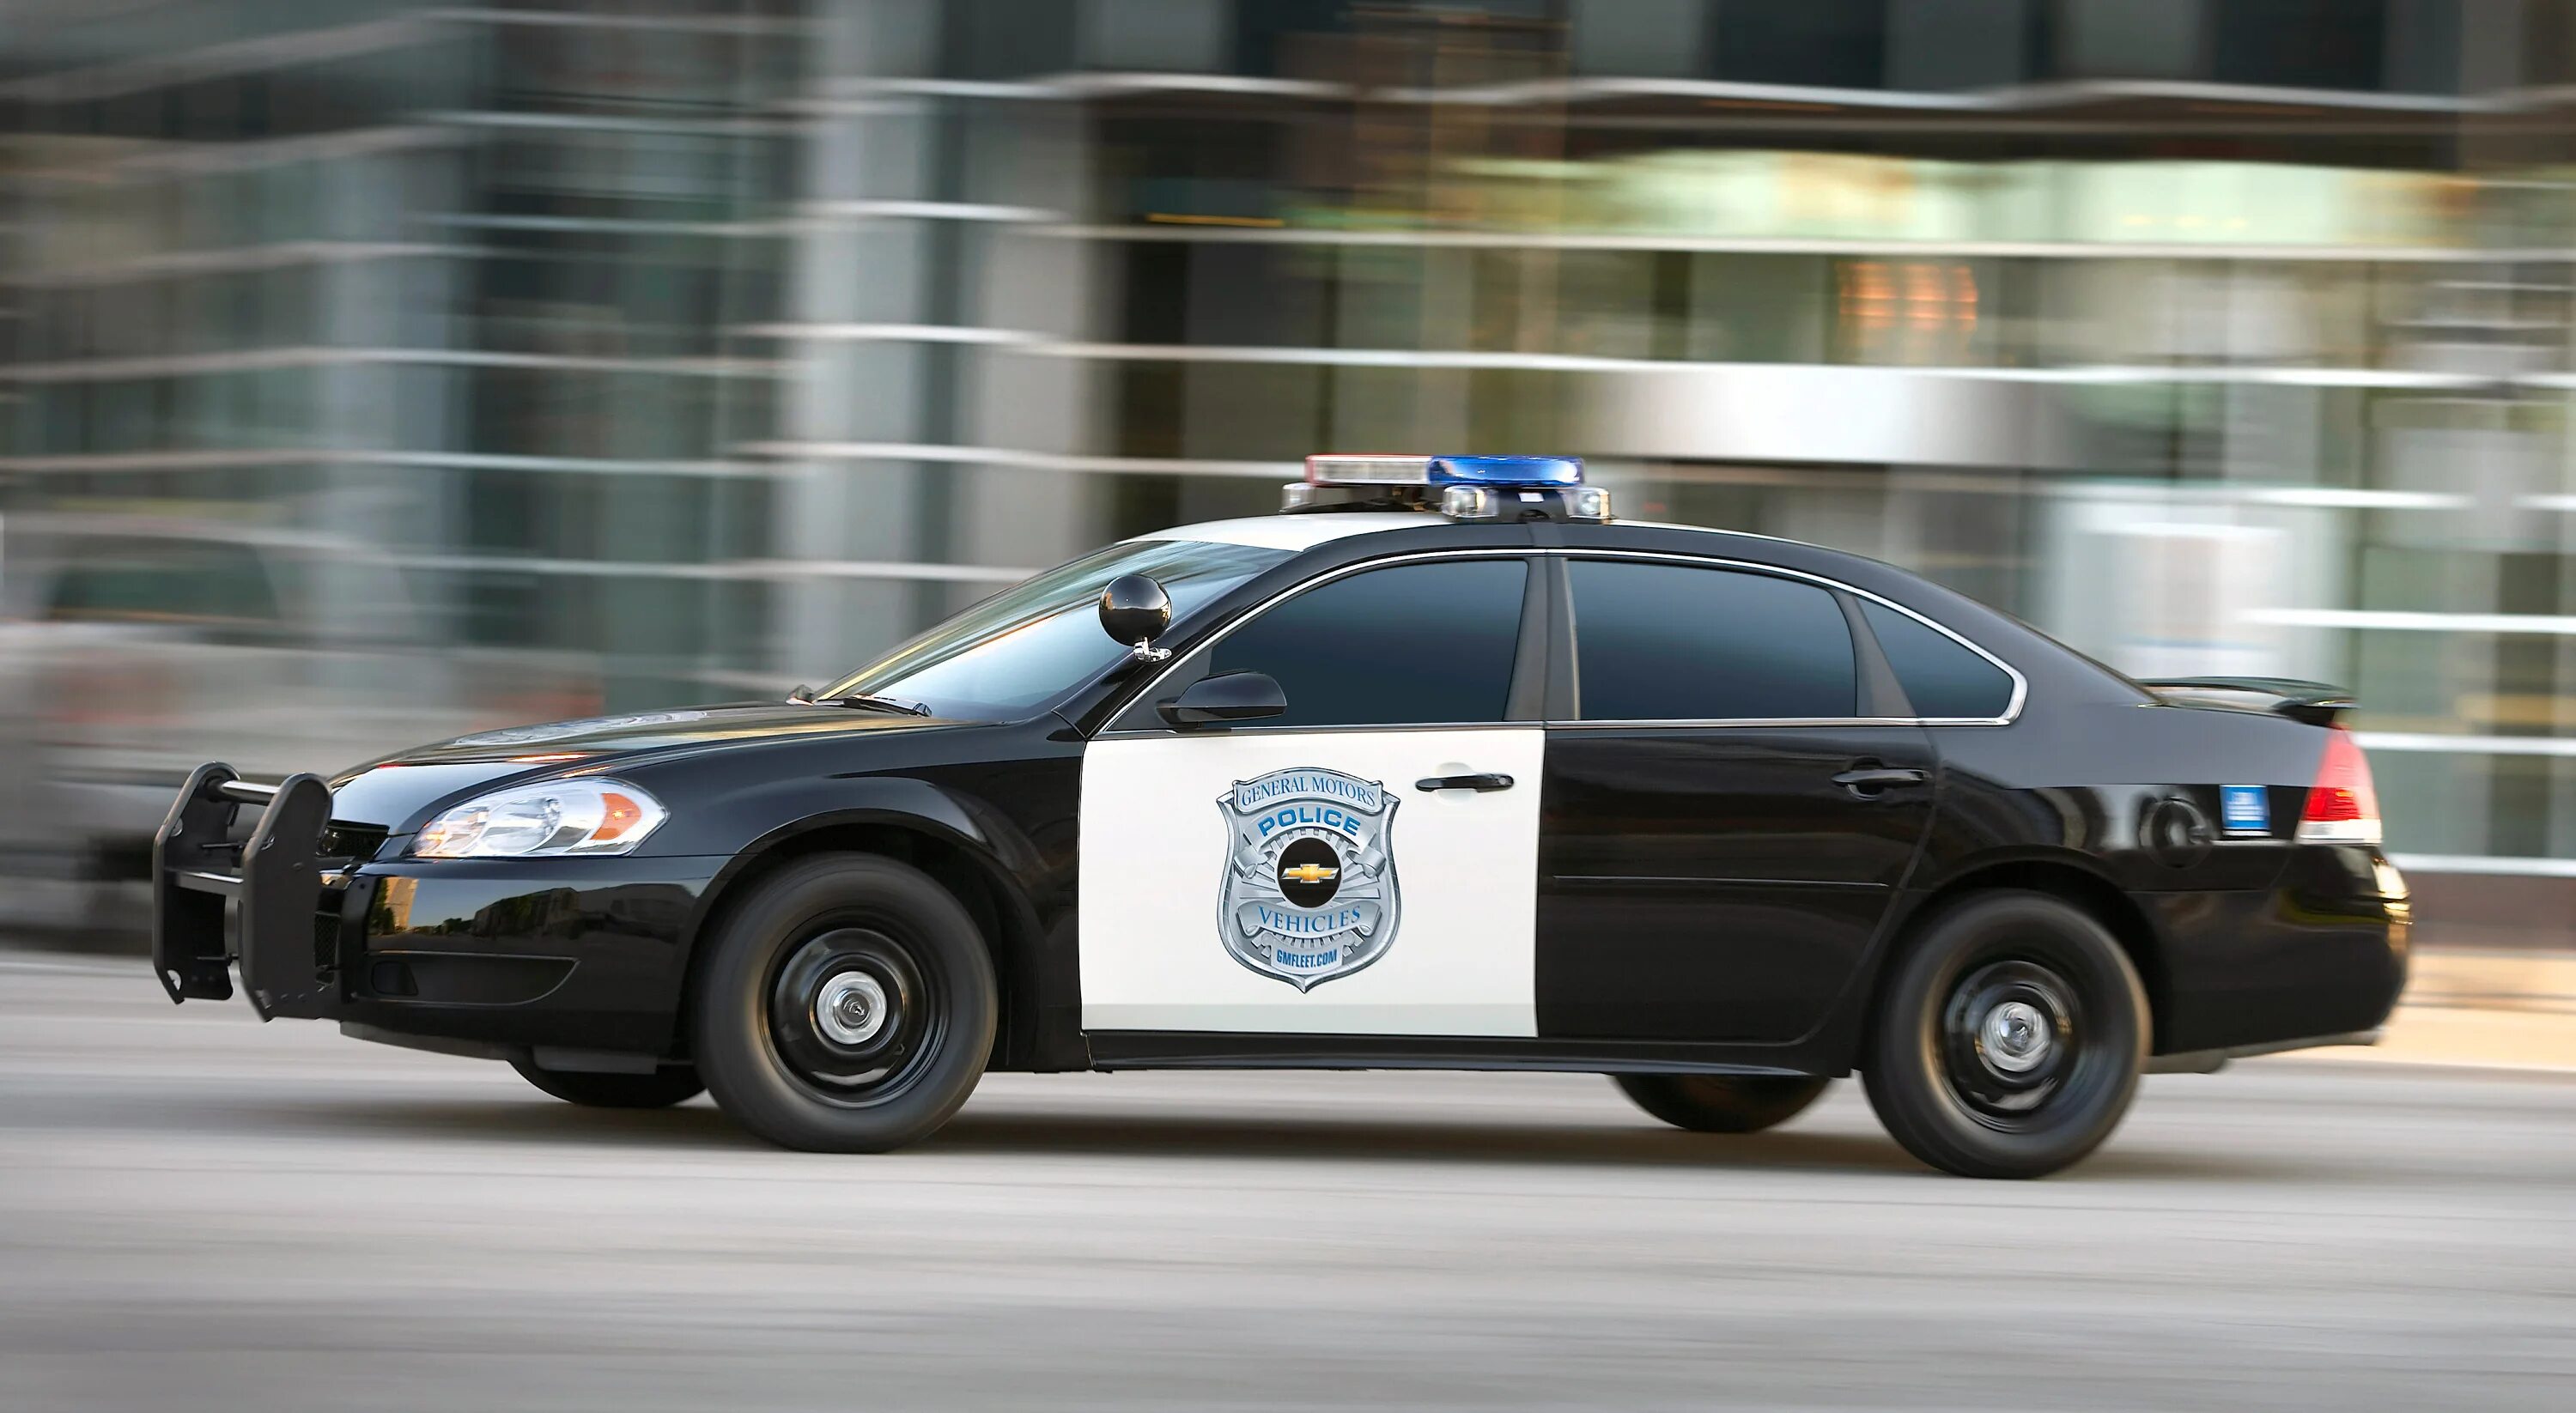 Шевроле каприз 2011 полиция. Chevrolet Caprice 2020 Police. Chevrolet Caprice 9c1 и PPV.. Chevrolet Caprice Police Interceptor. Машинка про полицию